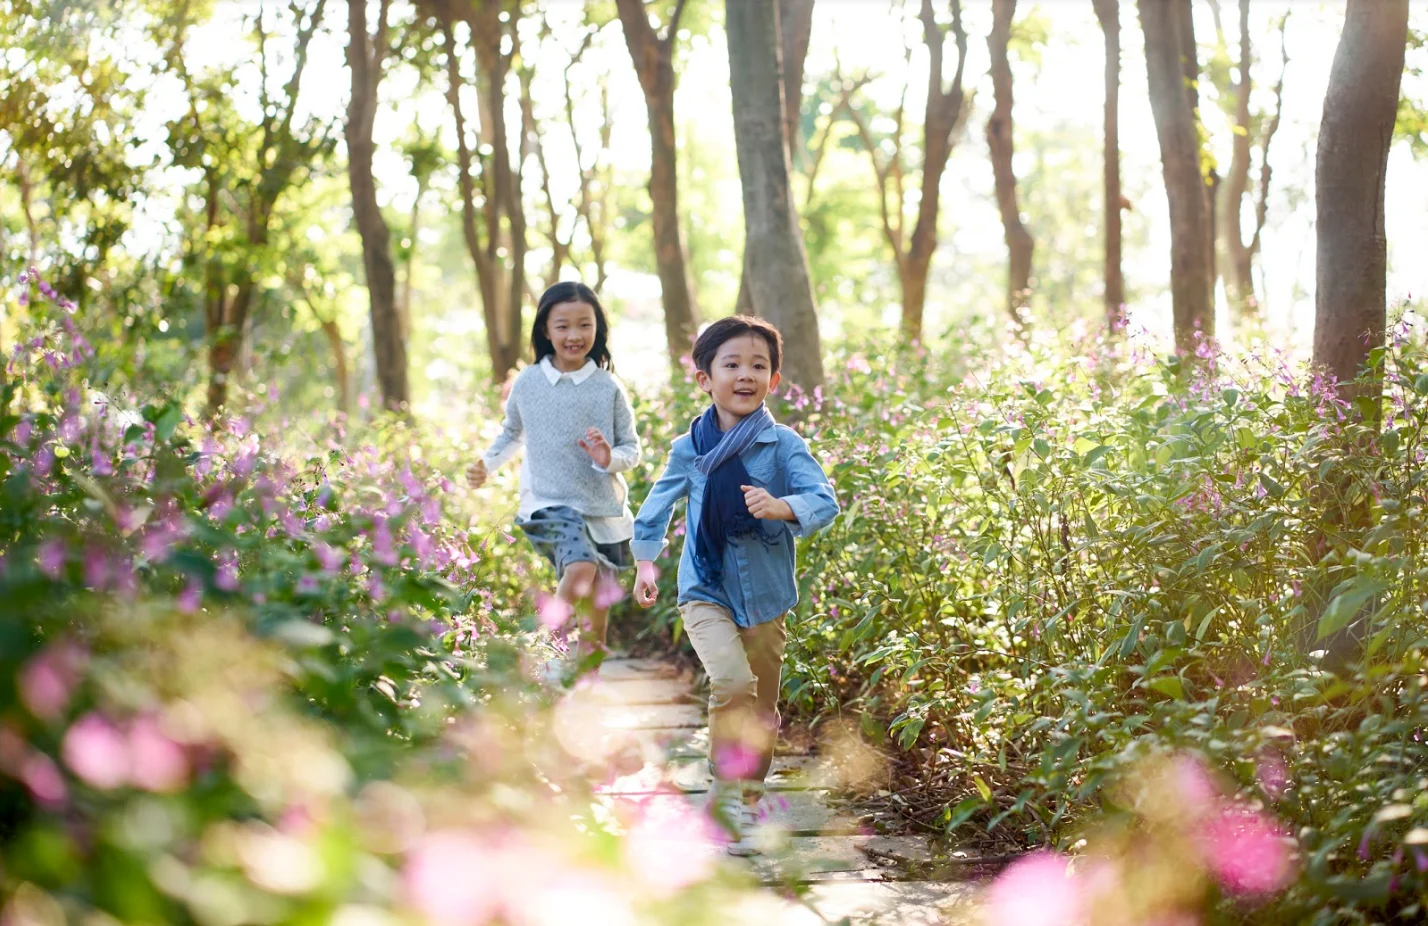 Getty Images: Children running in flower field, spring, summer, sunshine, sun